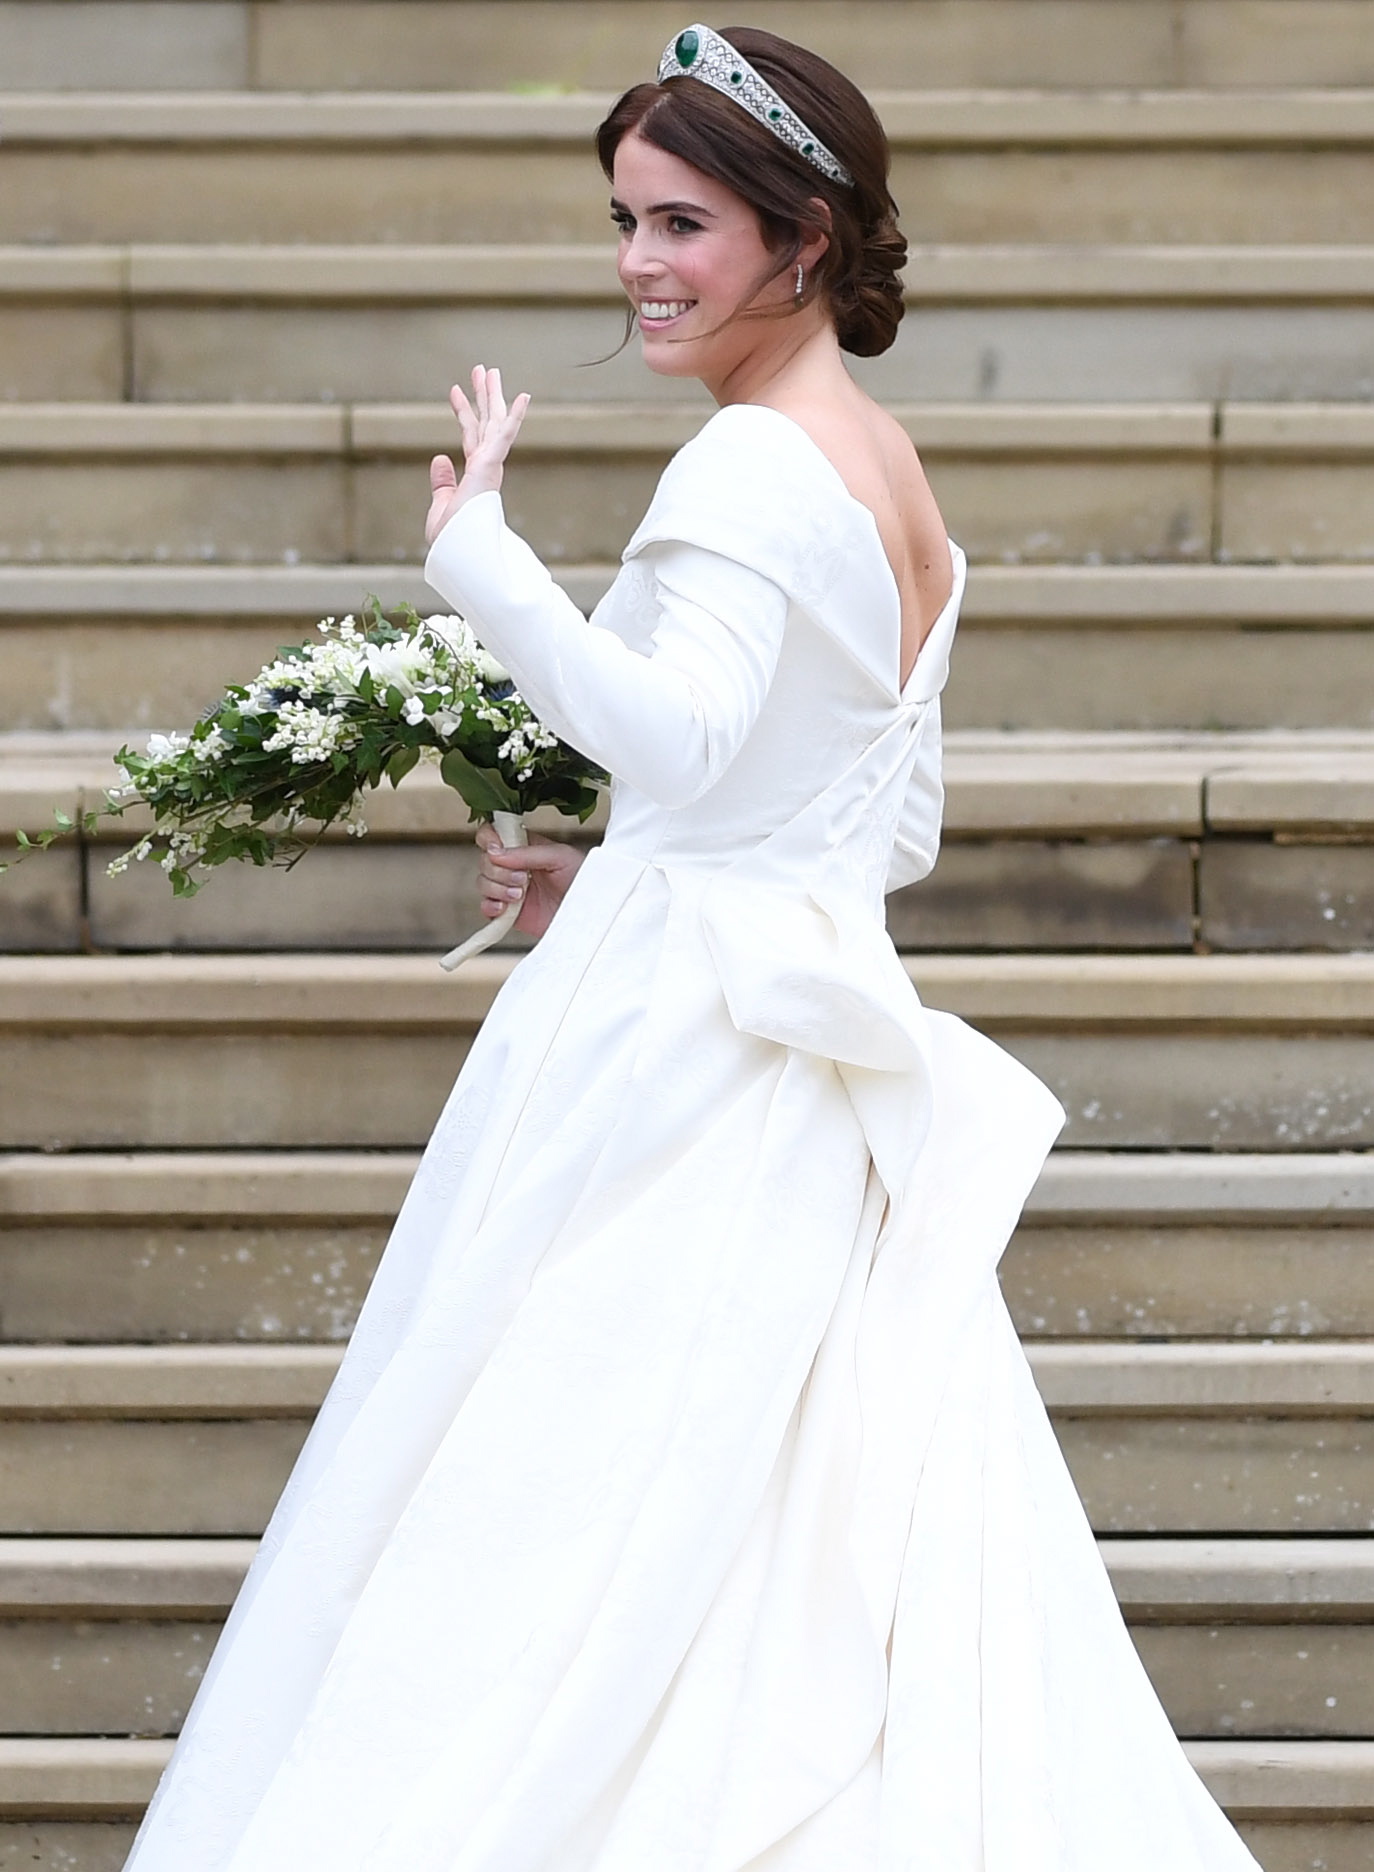 Внучката на кралица Елизабет II принцеса Юджини се омъжва за Джак Бруксбанк